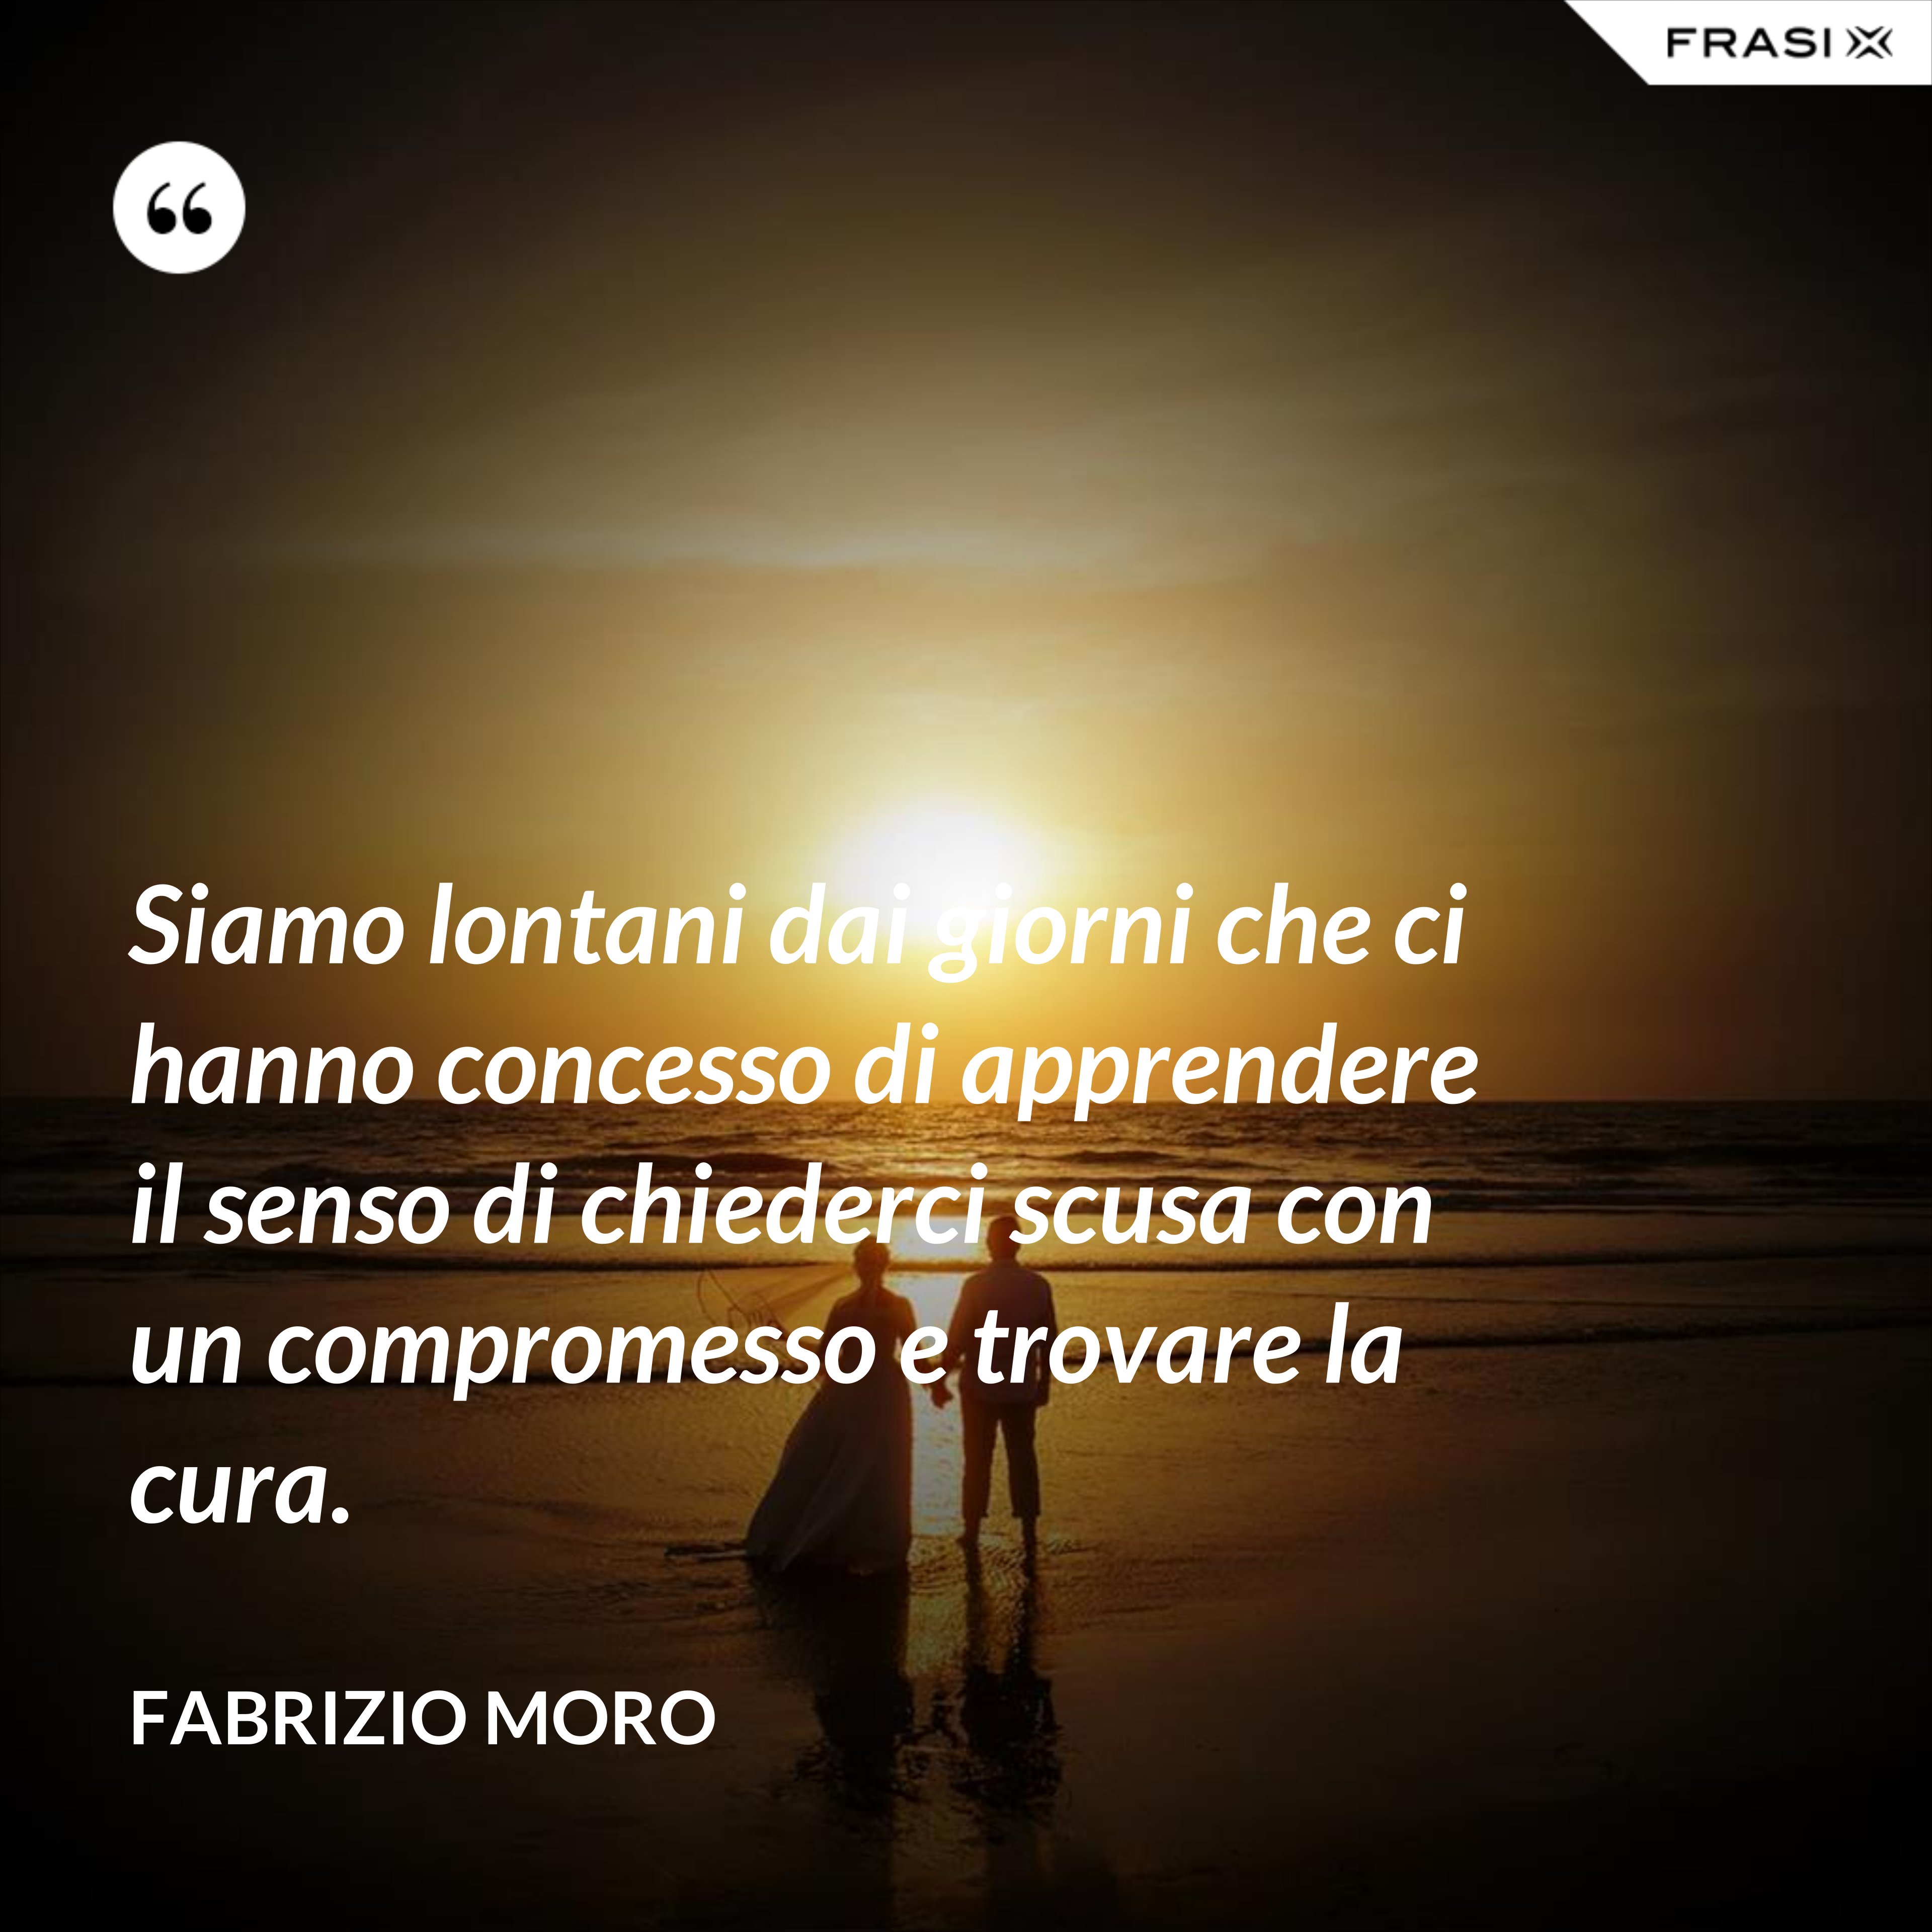 Siamo lontani dai giorni che ci hanno concesso di apprendere il senso di chiederci scusa con un compromesso e trovare la cura. - Fabrizio Moro